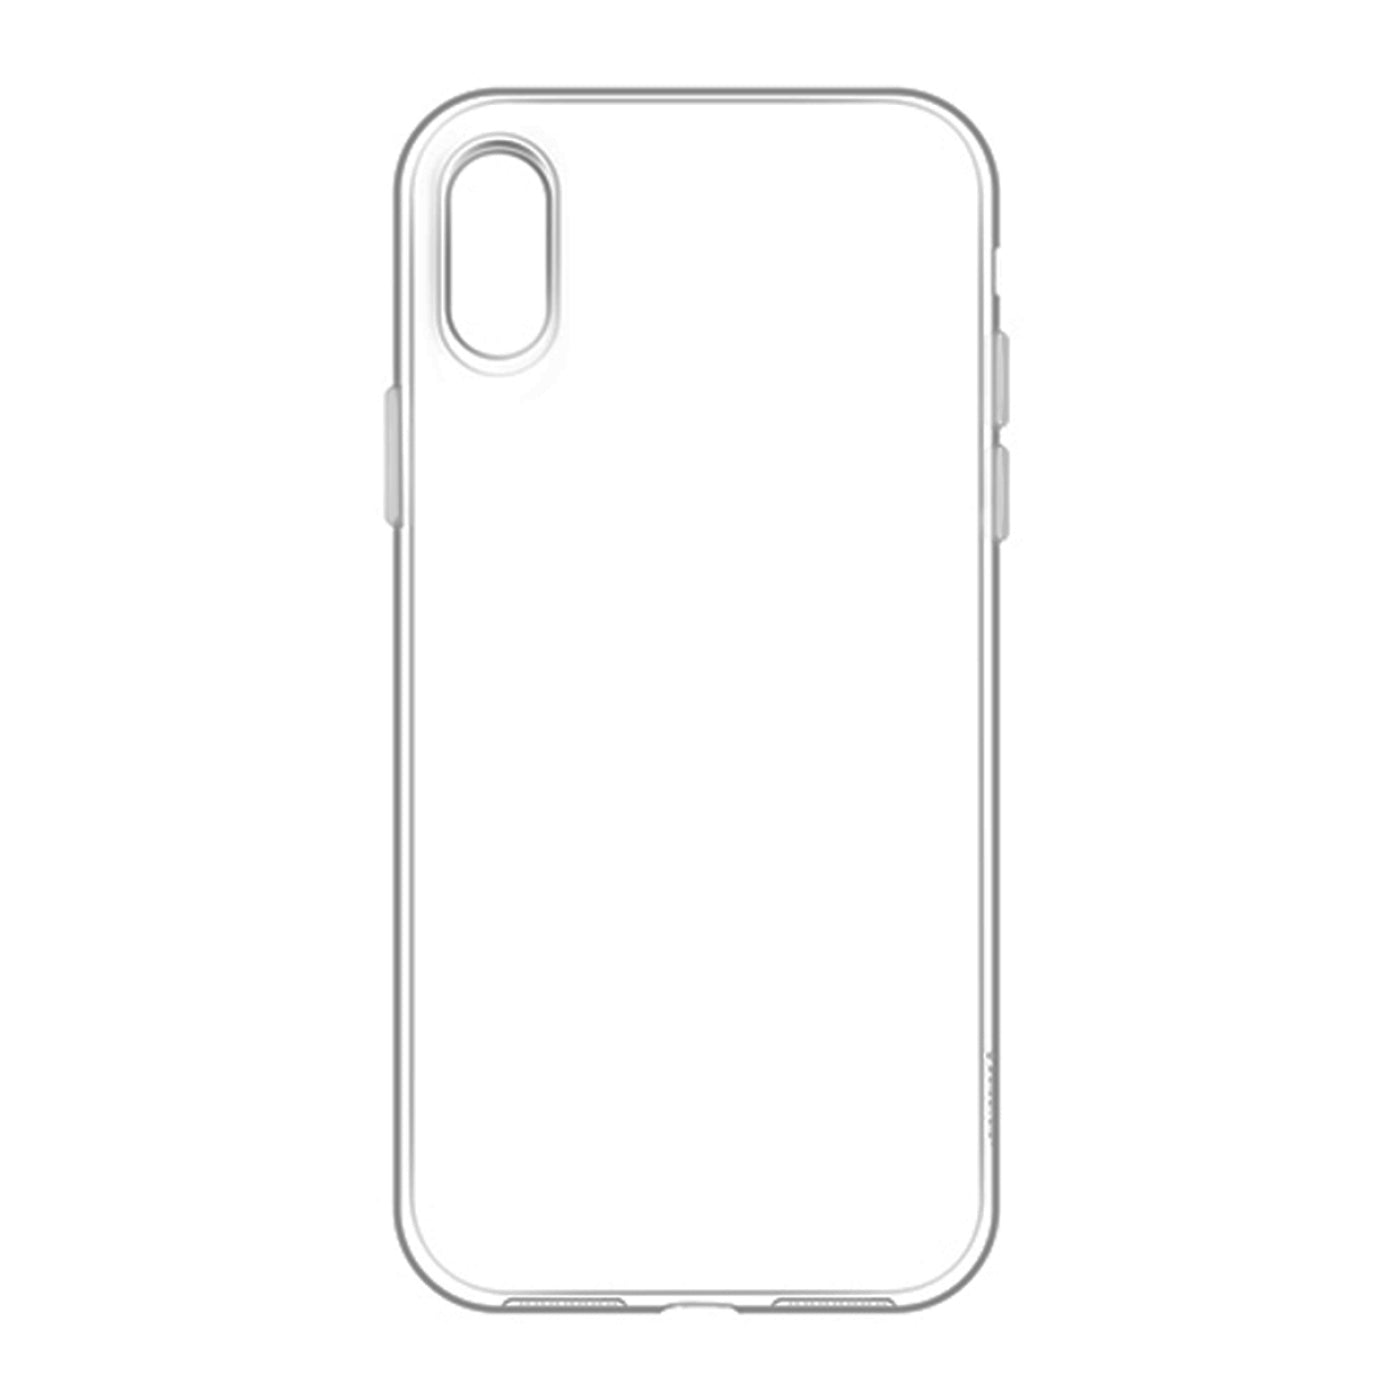 Familia iPhone 13 Reacondicionado – Loop Mobile - ES